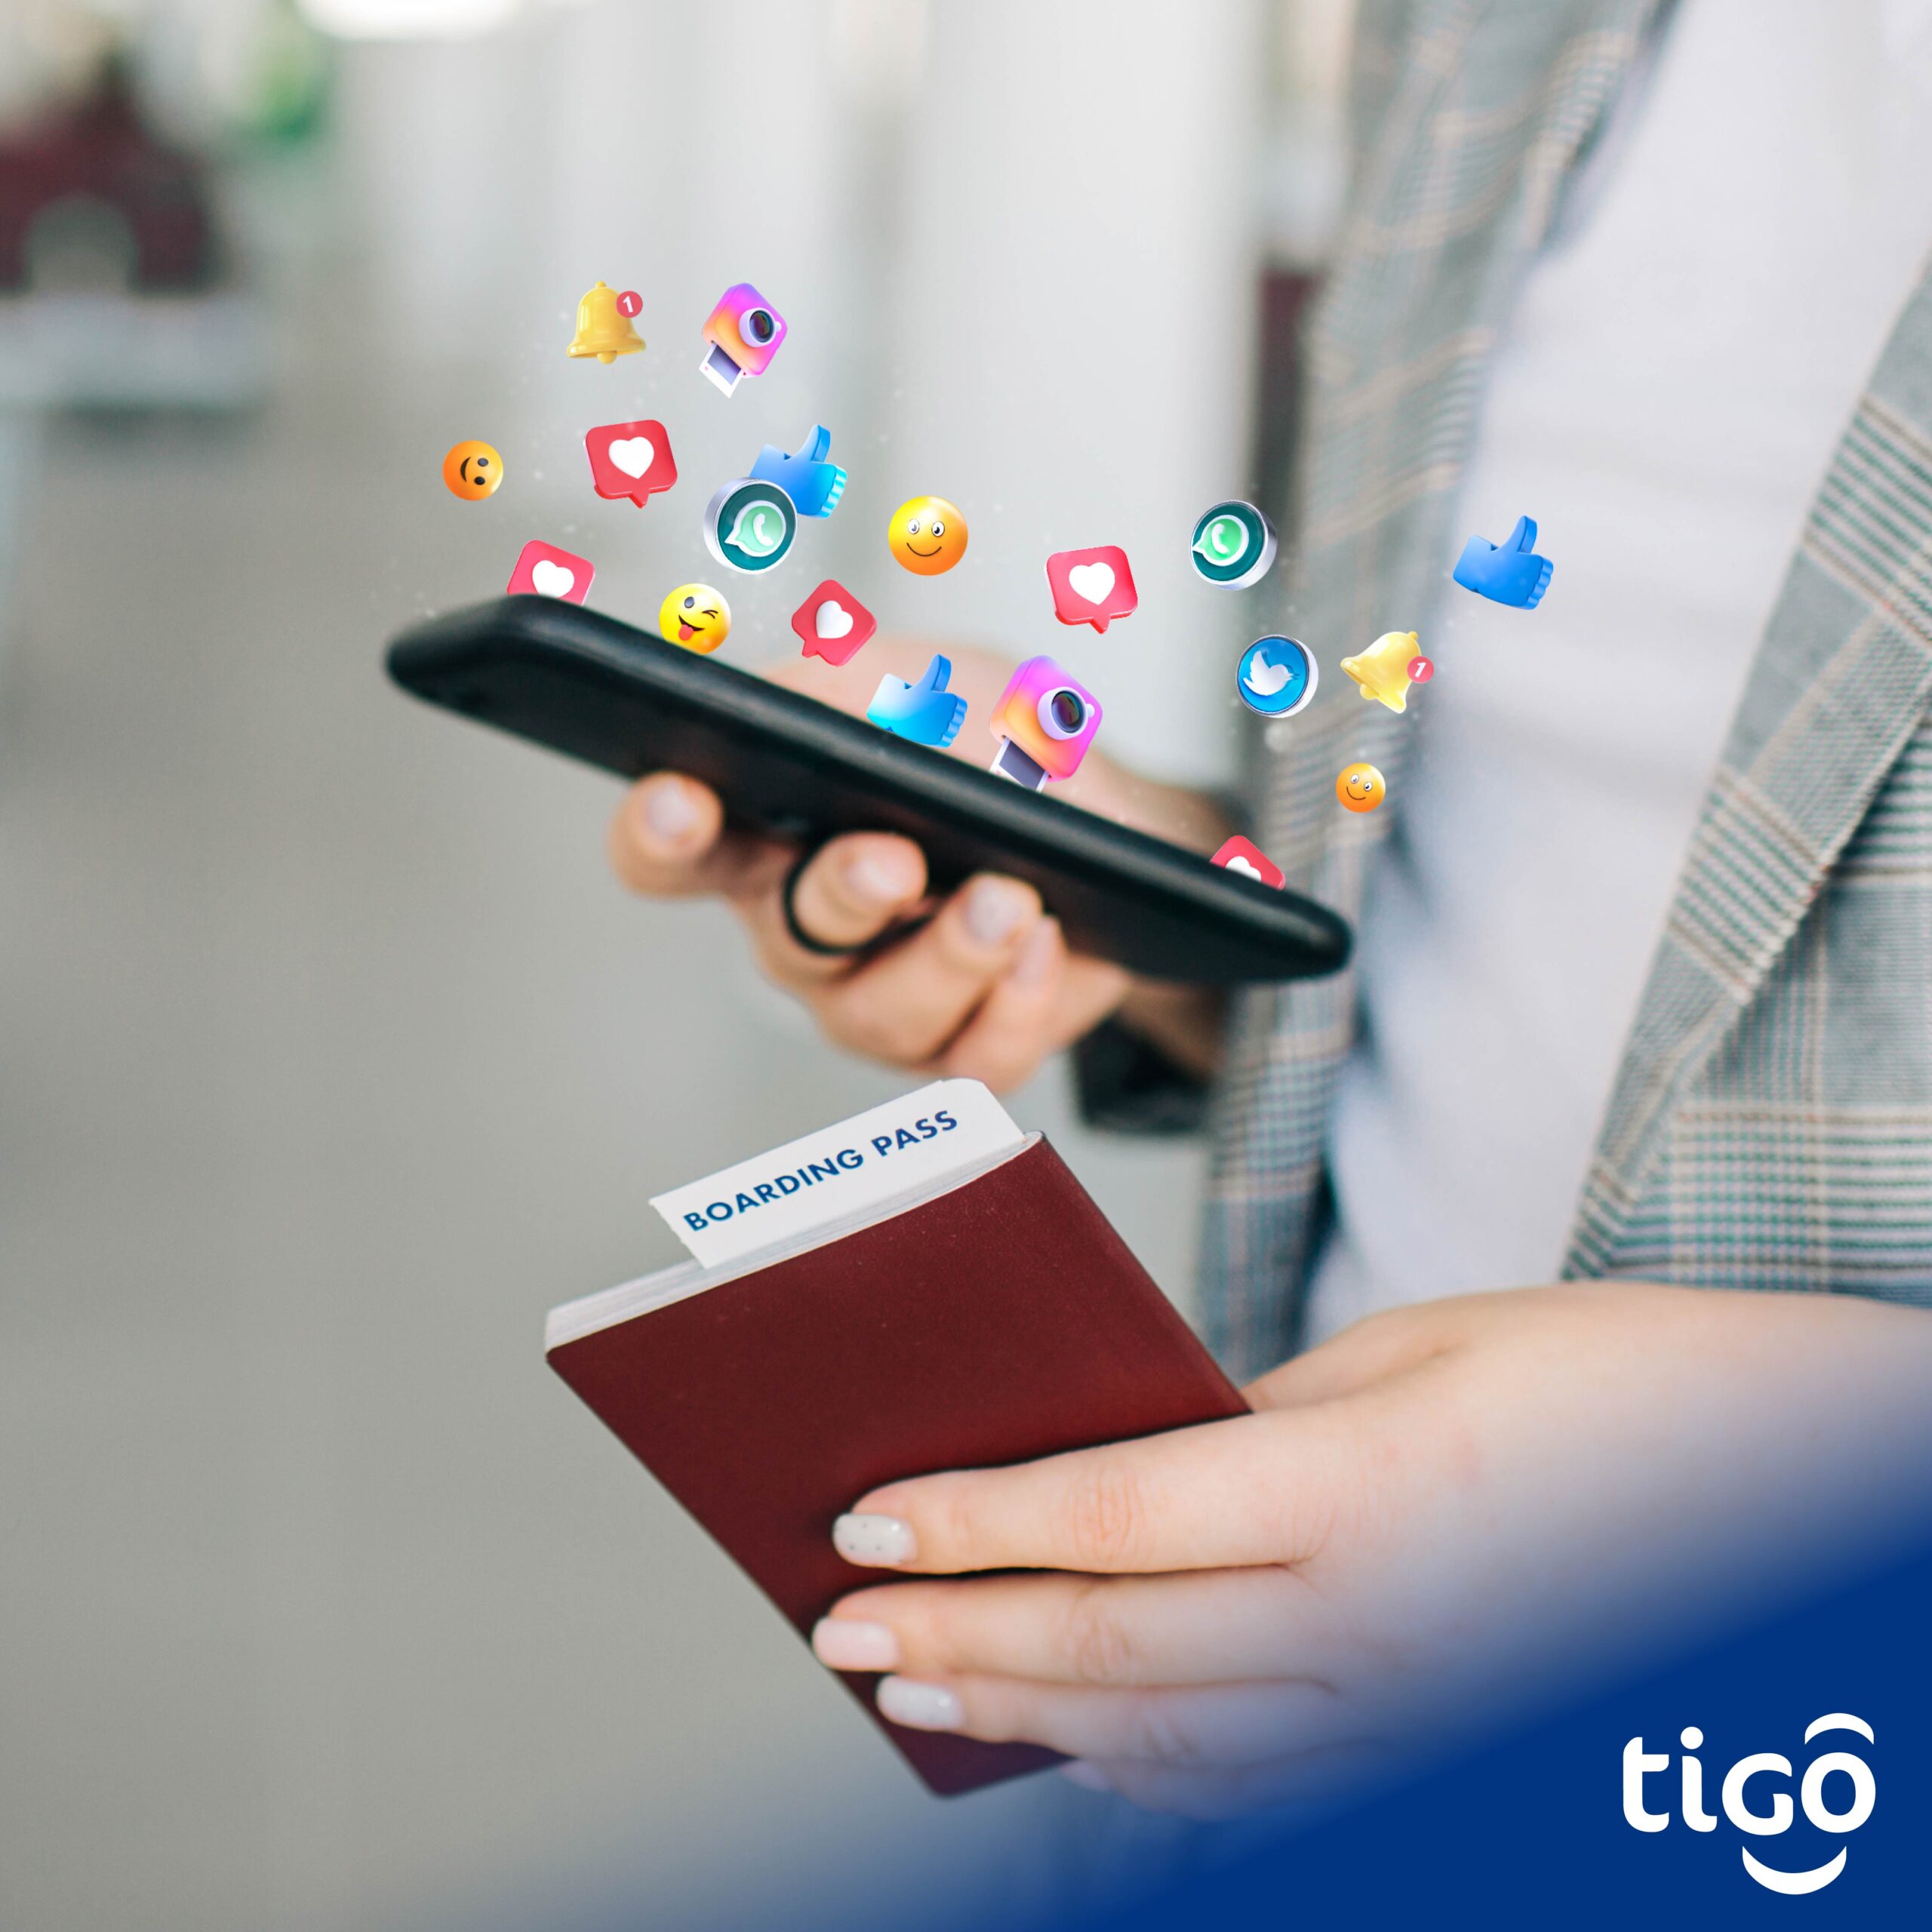 Tigo tiene el mejor Roaming 4G y acompaña asus clientes en sus destinos favoritos